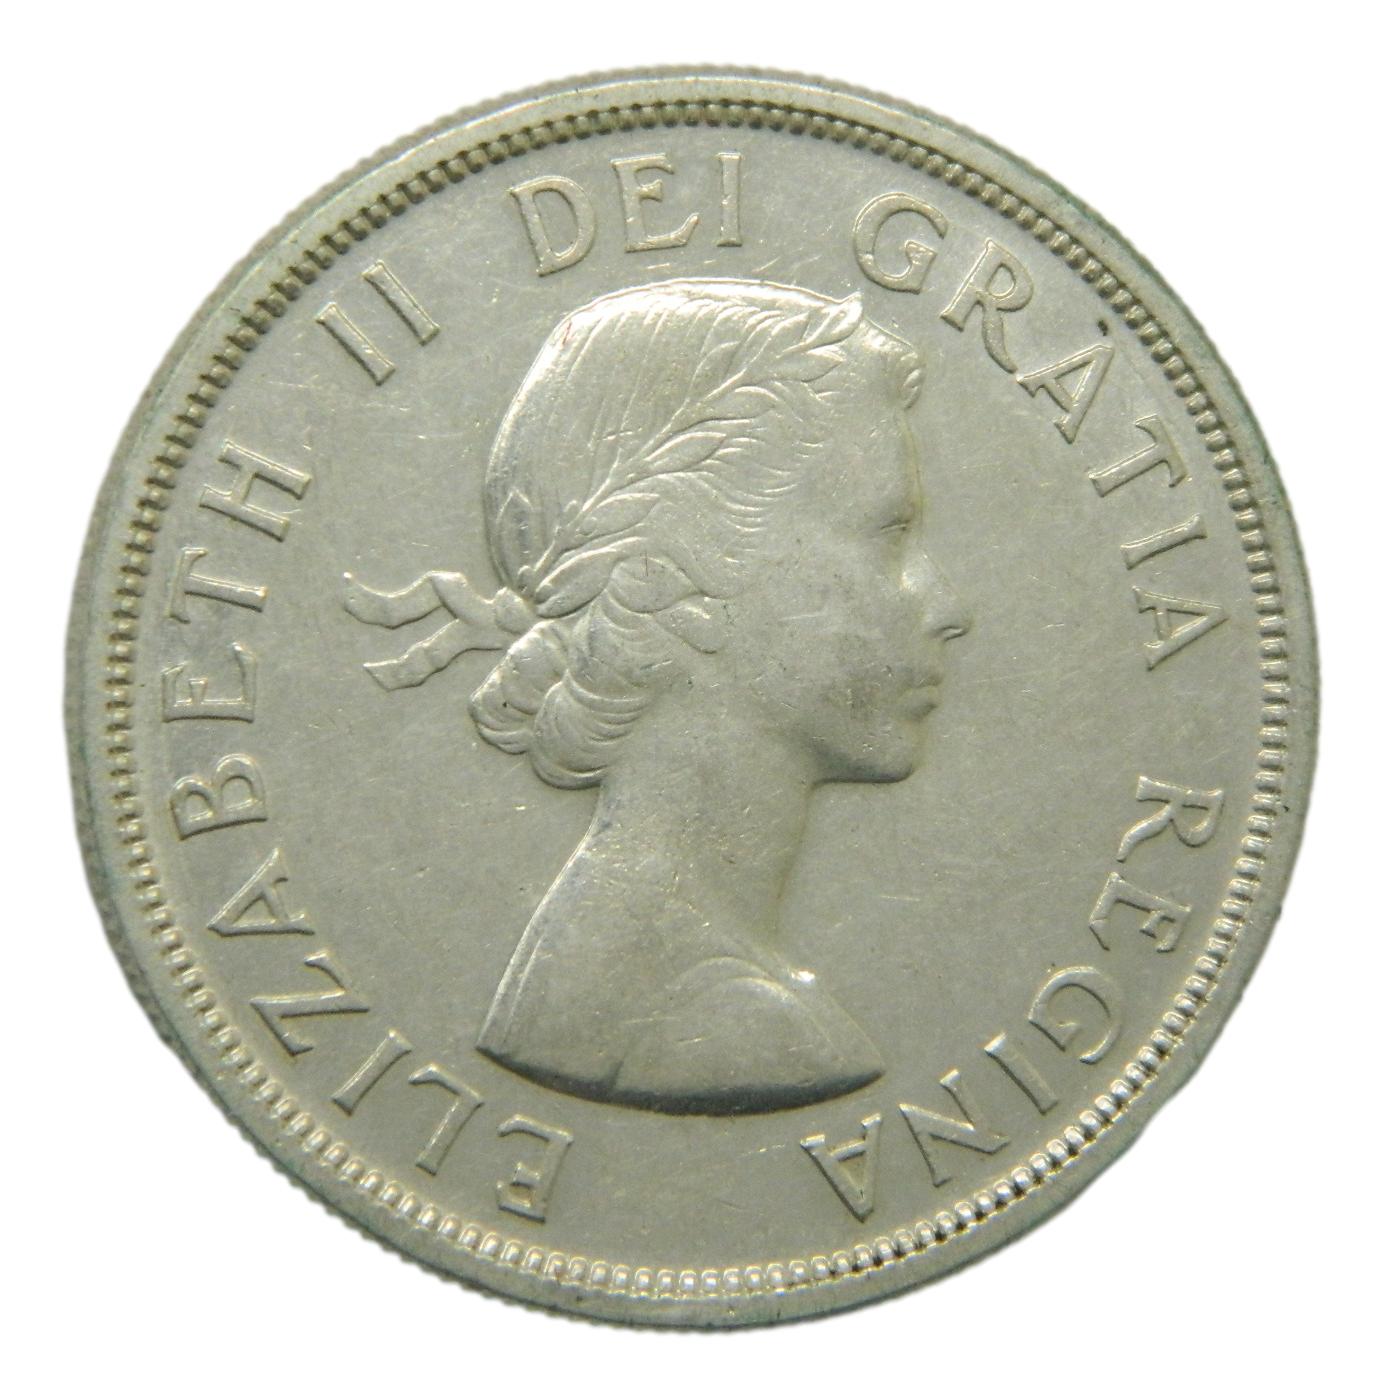 1955 - CANADA - DOLLAR - ELIZABETH II - PLATA